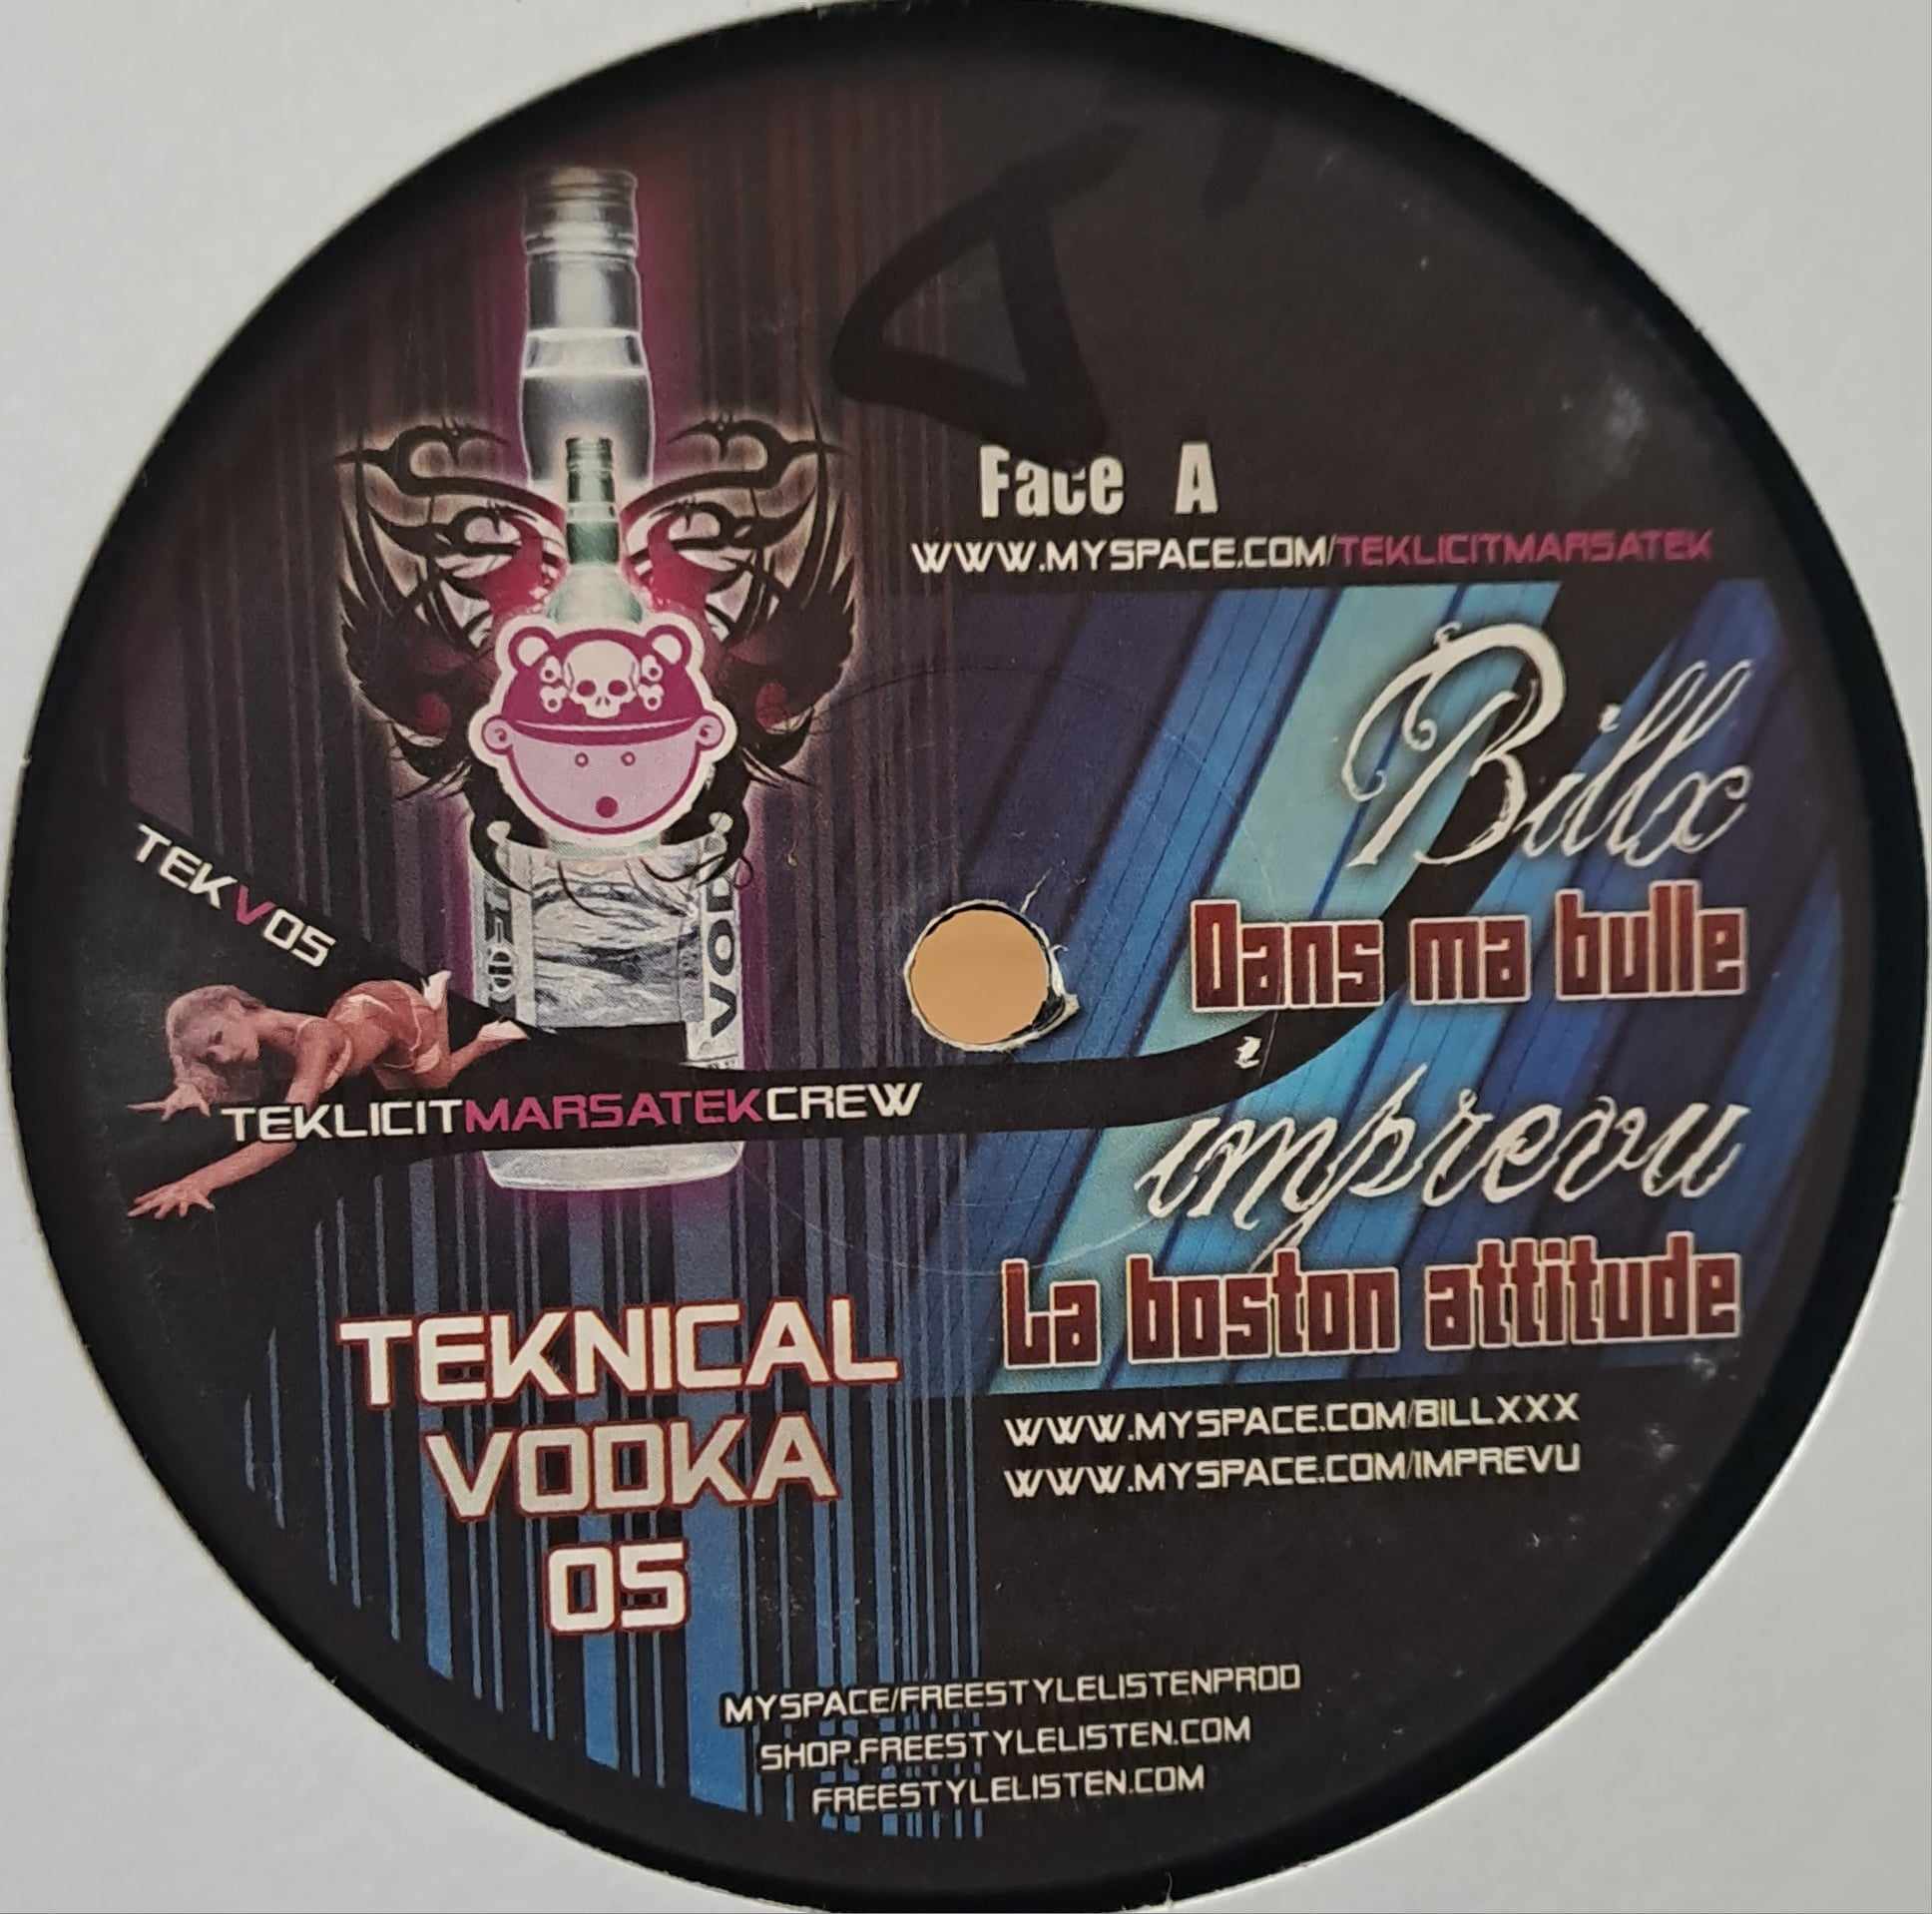 Teknical Vodka 05 - vinyle tribecore